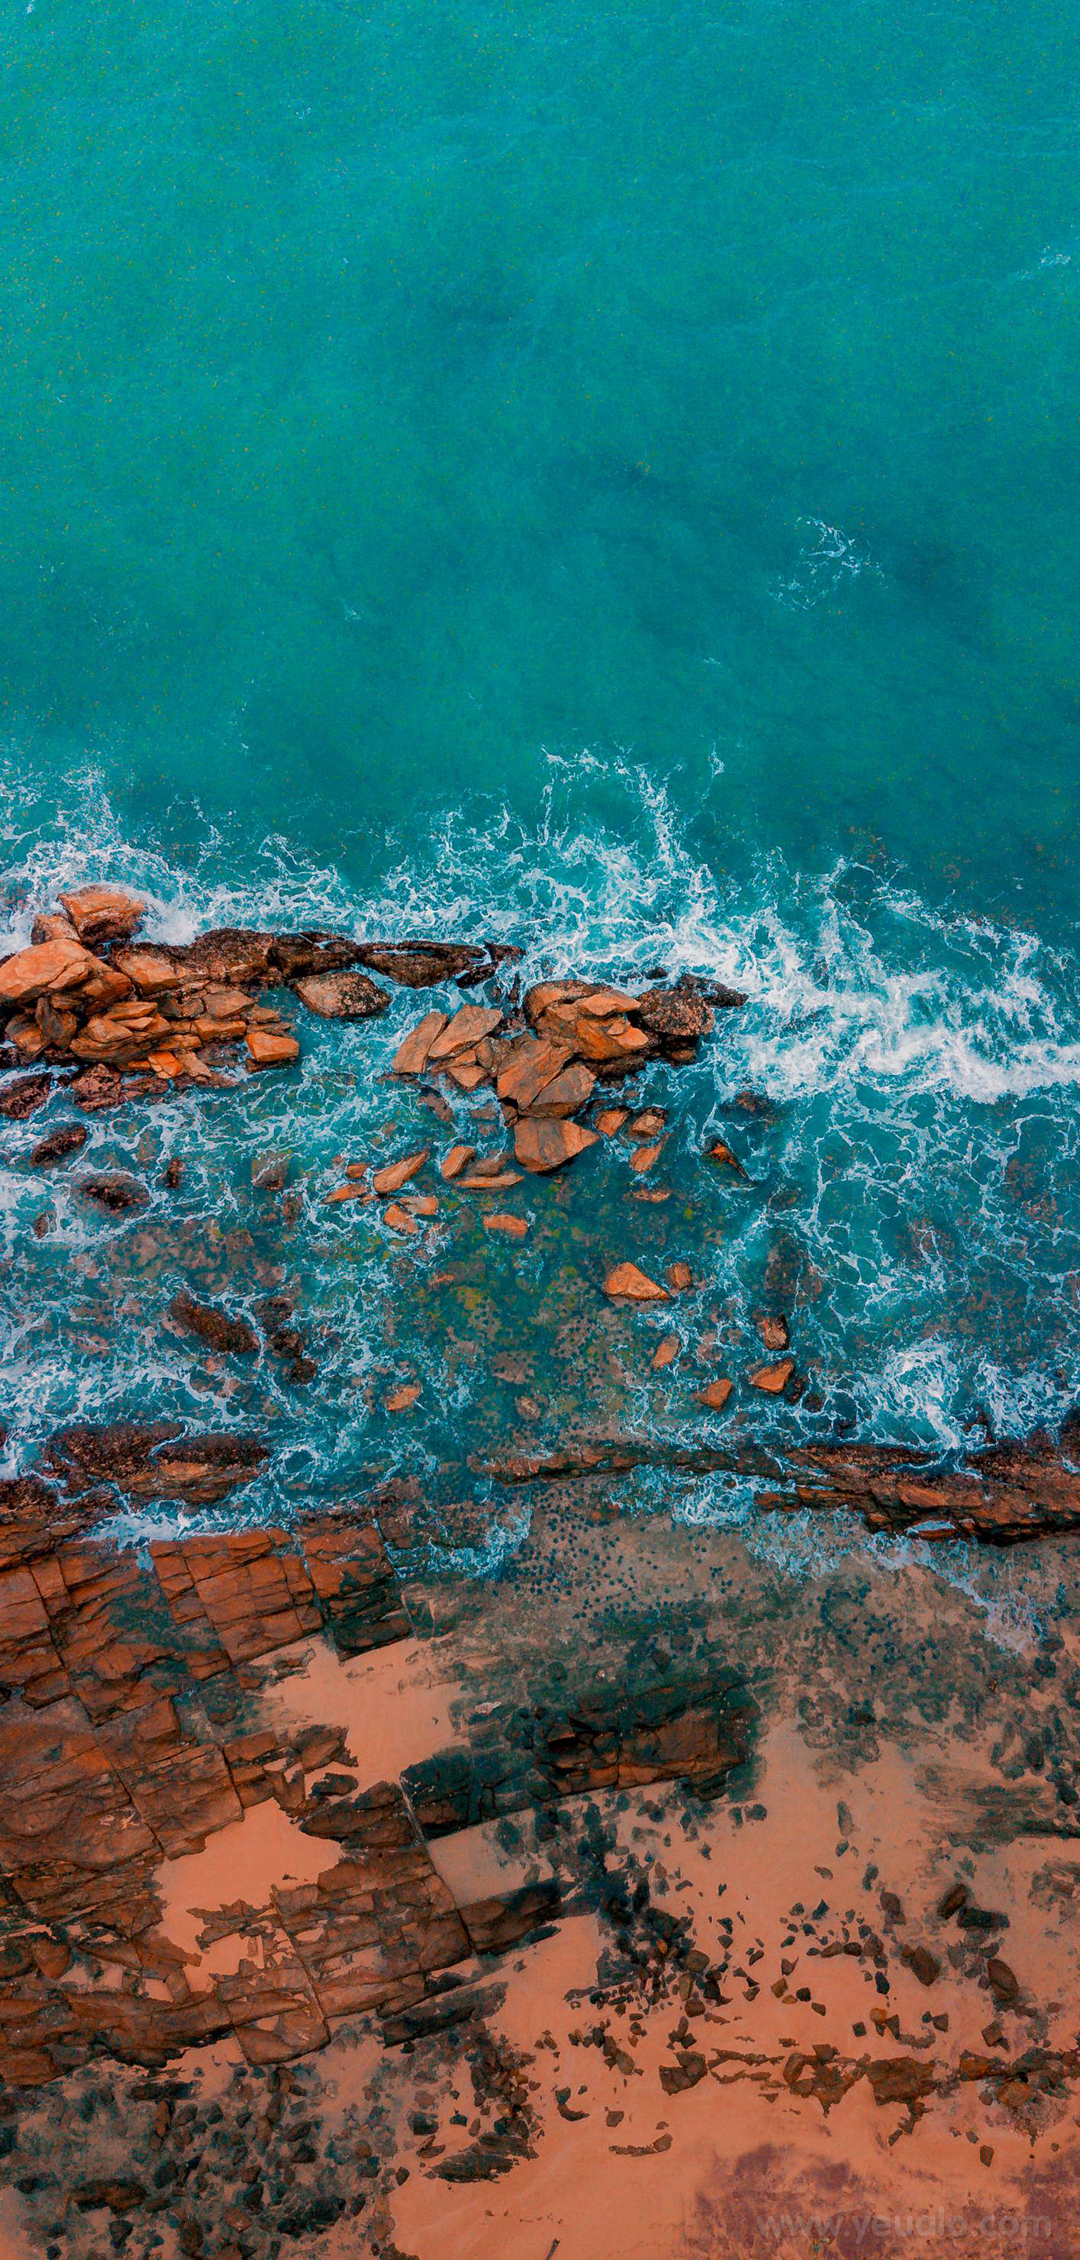 Hình nền biển: Biển luôn là một trong những bức tranh thiên nhiên tuyệt vời nhất trên đời. Sắc xanh và biết điều của nó gia tăng thêm nét trầm tư và sự bình yên cho tâm hồn bạn. Hãy lựa chọn hình nền biển để trang trí cho điện thoại của bạn, mang đến cho mình một không gian độc đáo và thư giãn.